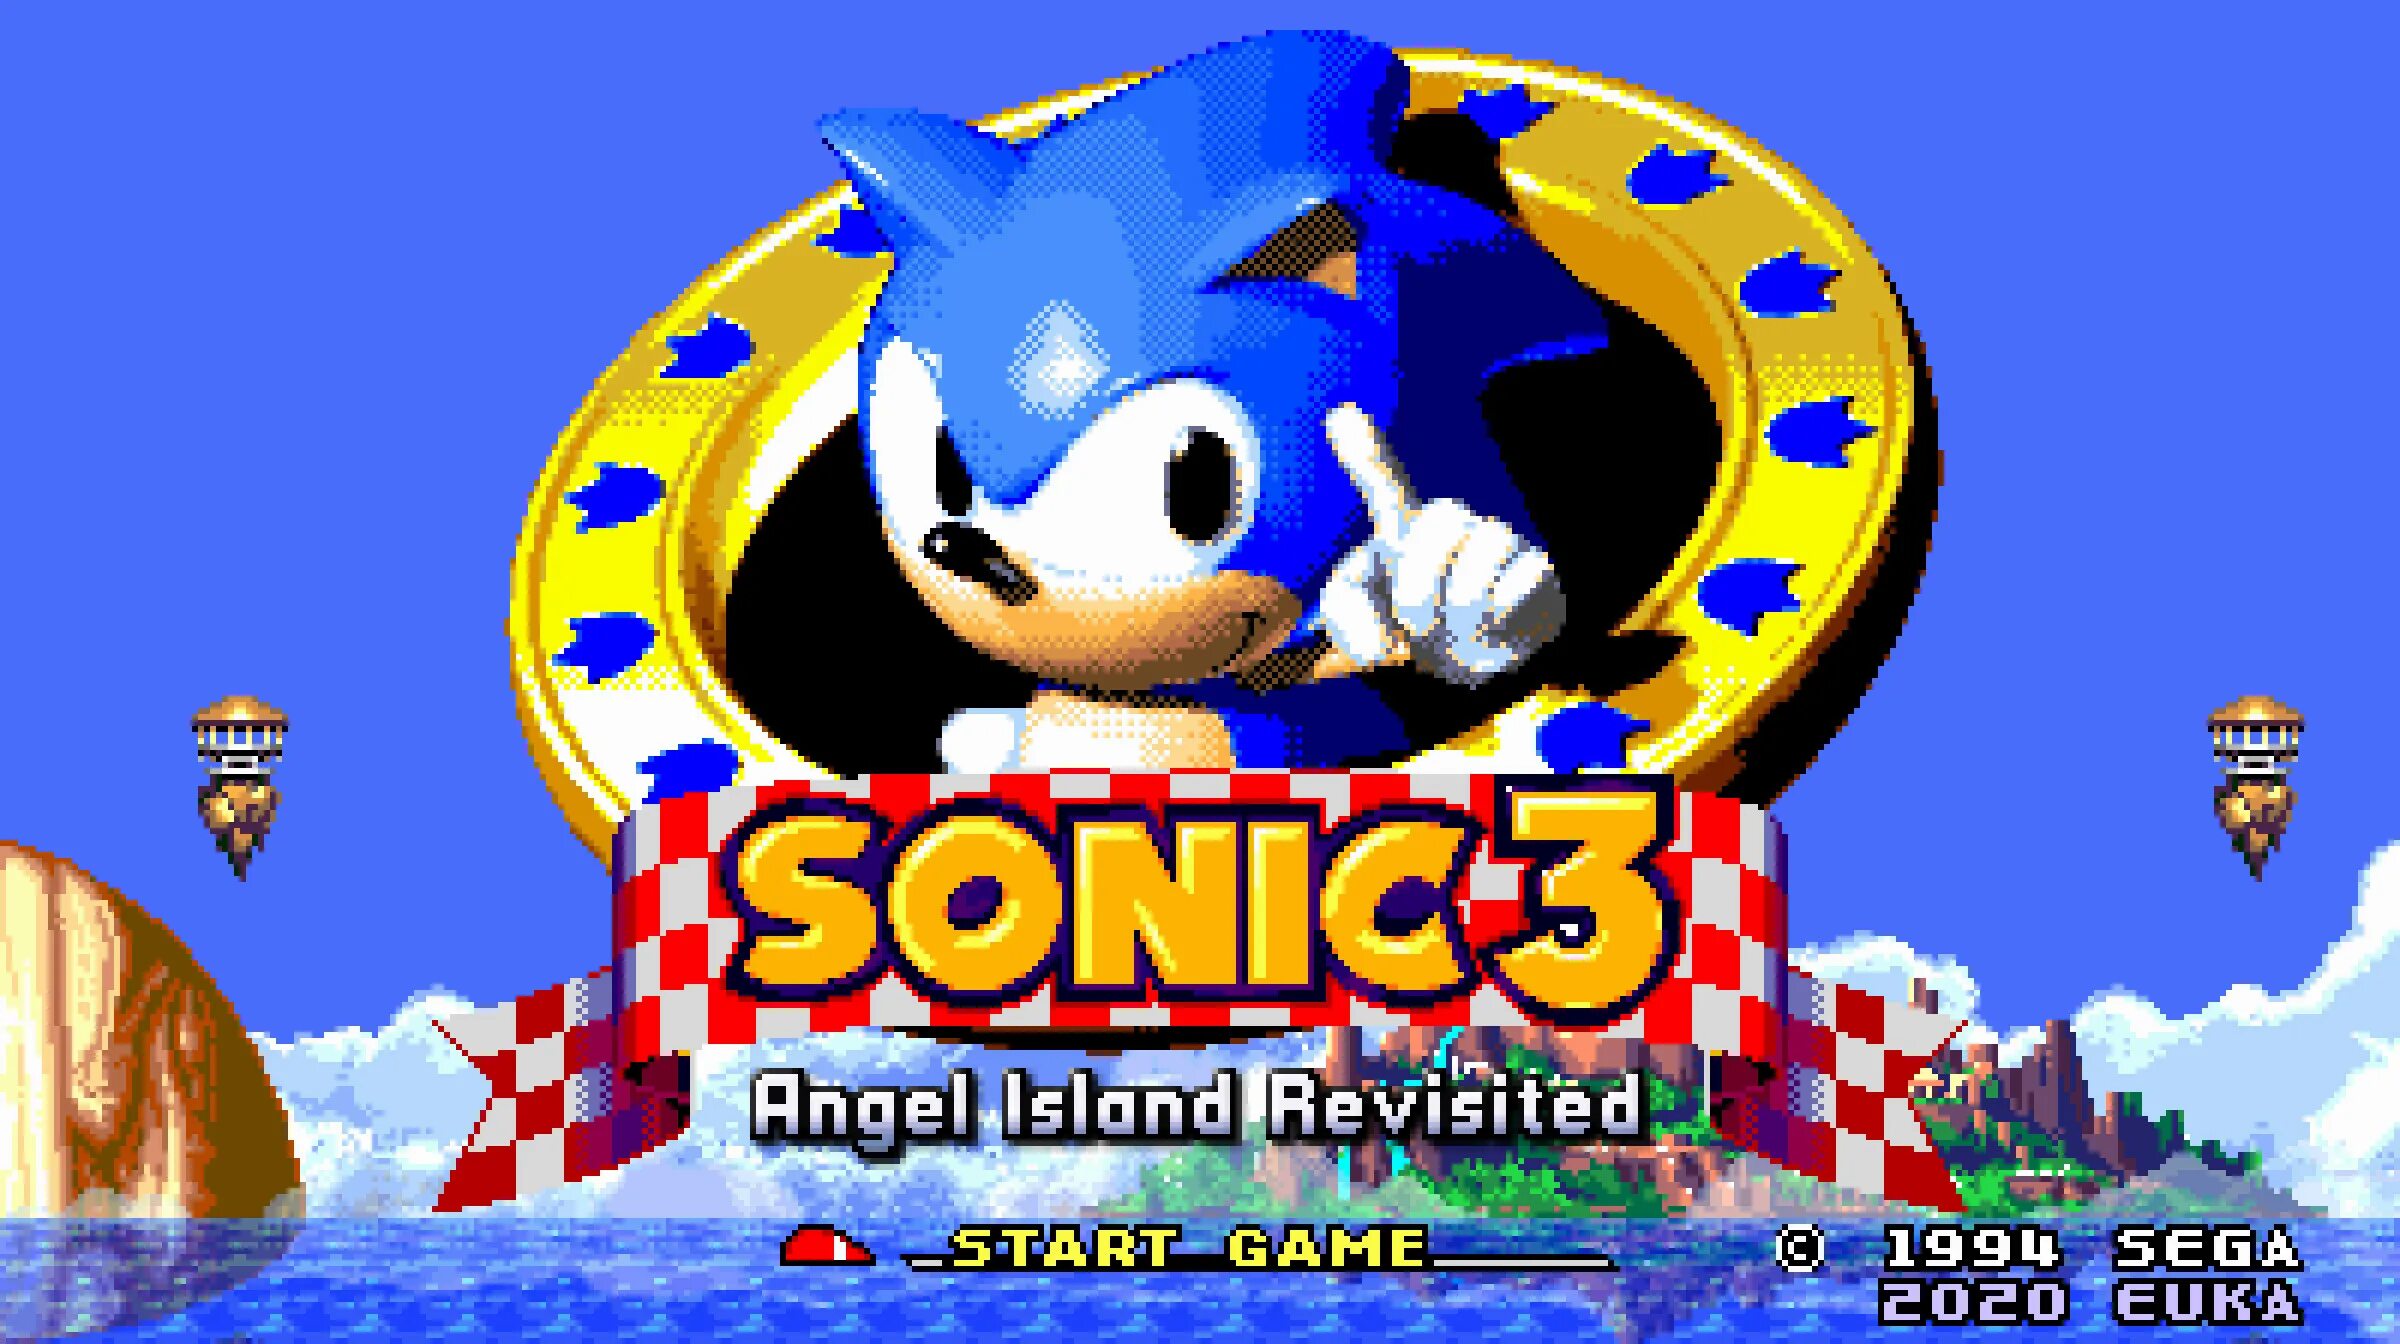 ROM Соник 3 АИР. Sonic 3 a.i.r. Соник 3 остров ангелов. Энджел Айленд Соник 3. Sonic 3 island